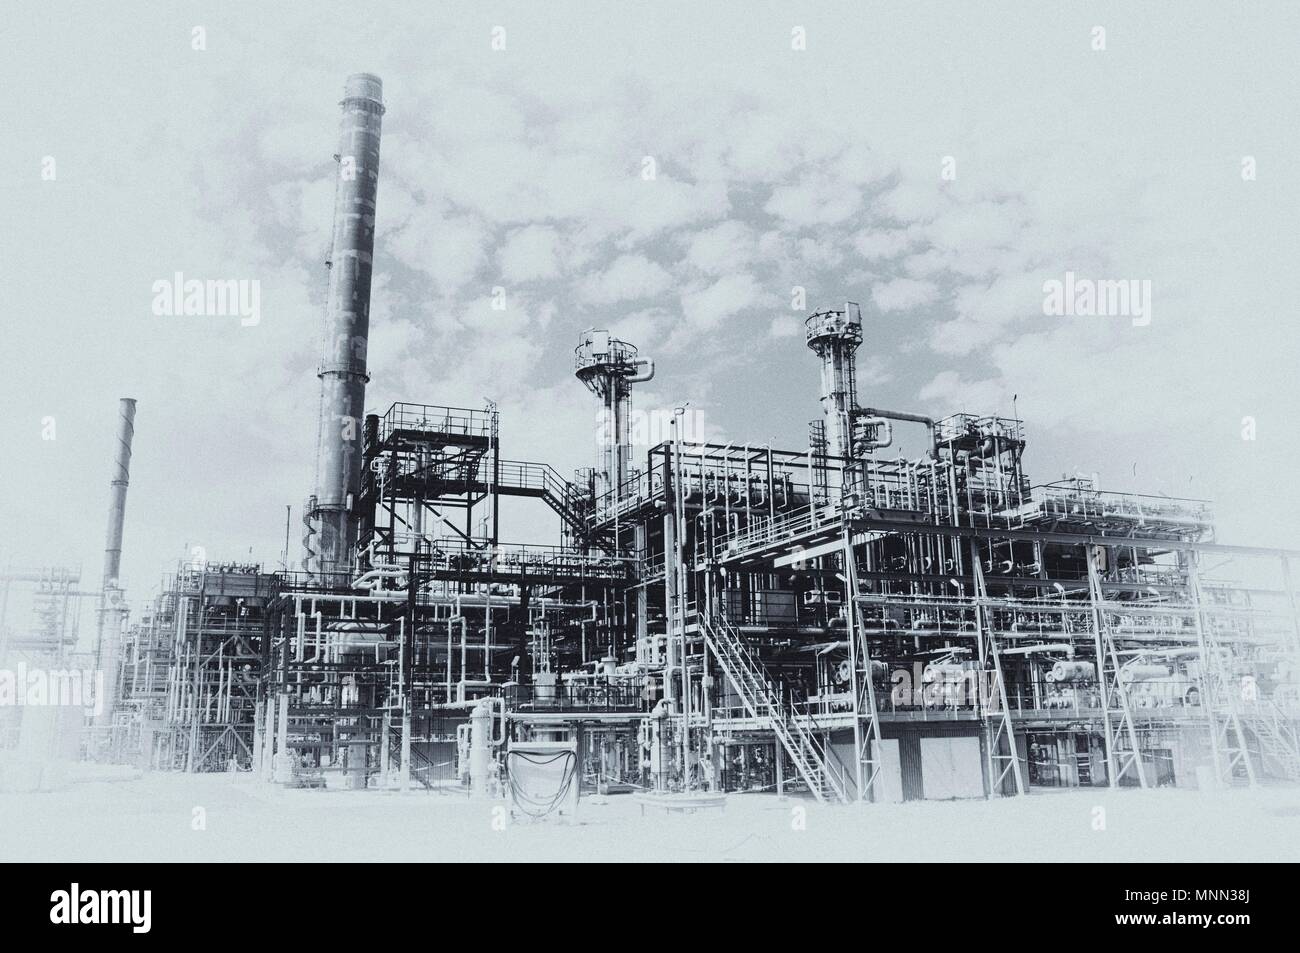 La refinería de petróleo y gas. Foto de stock